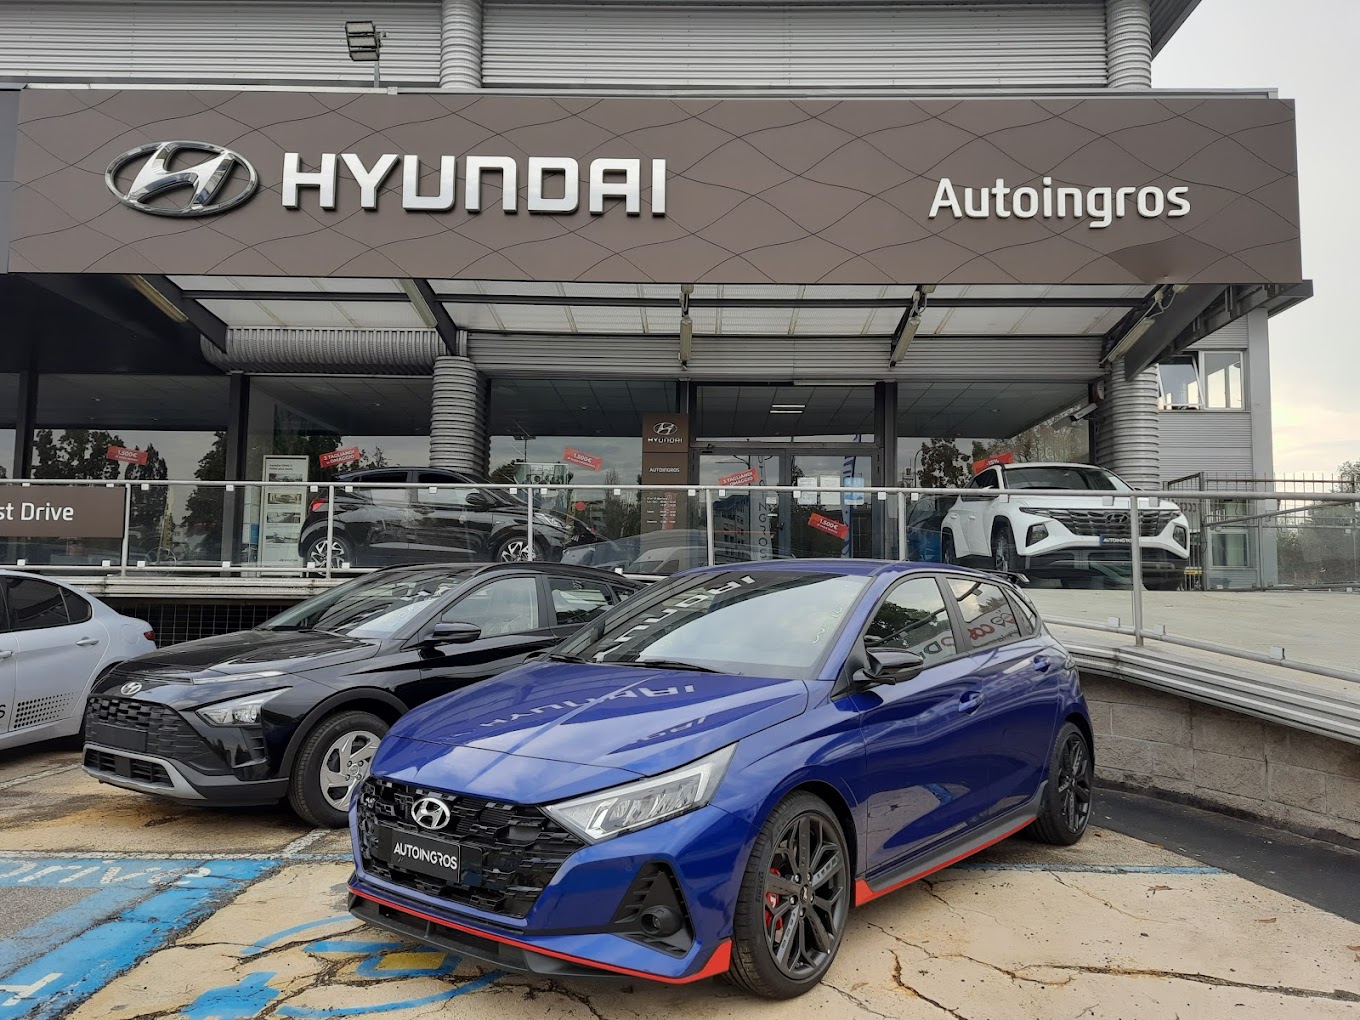 Autoingros - Hyundai Torino